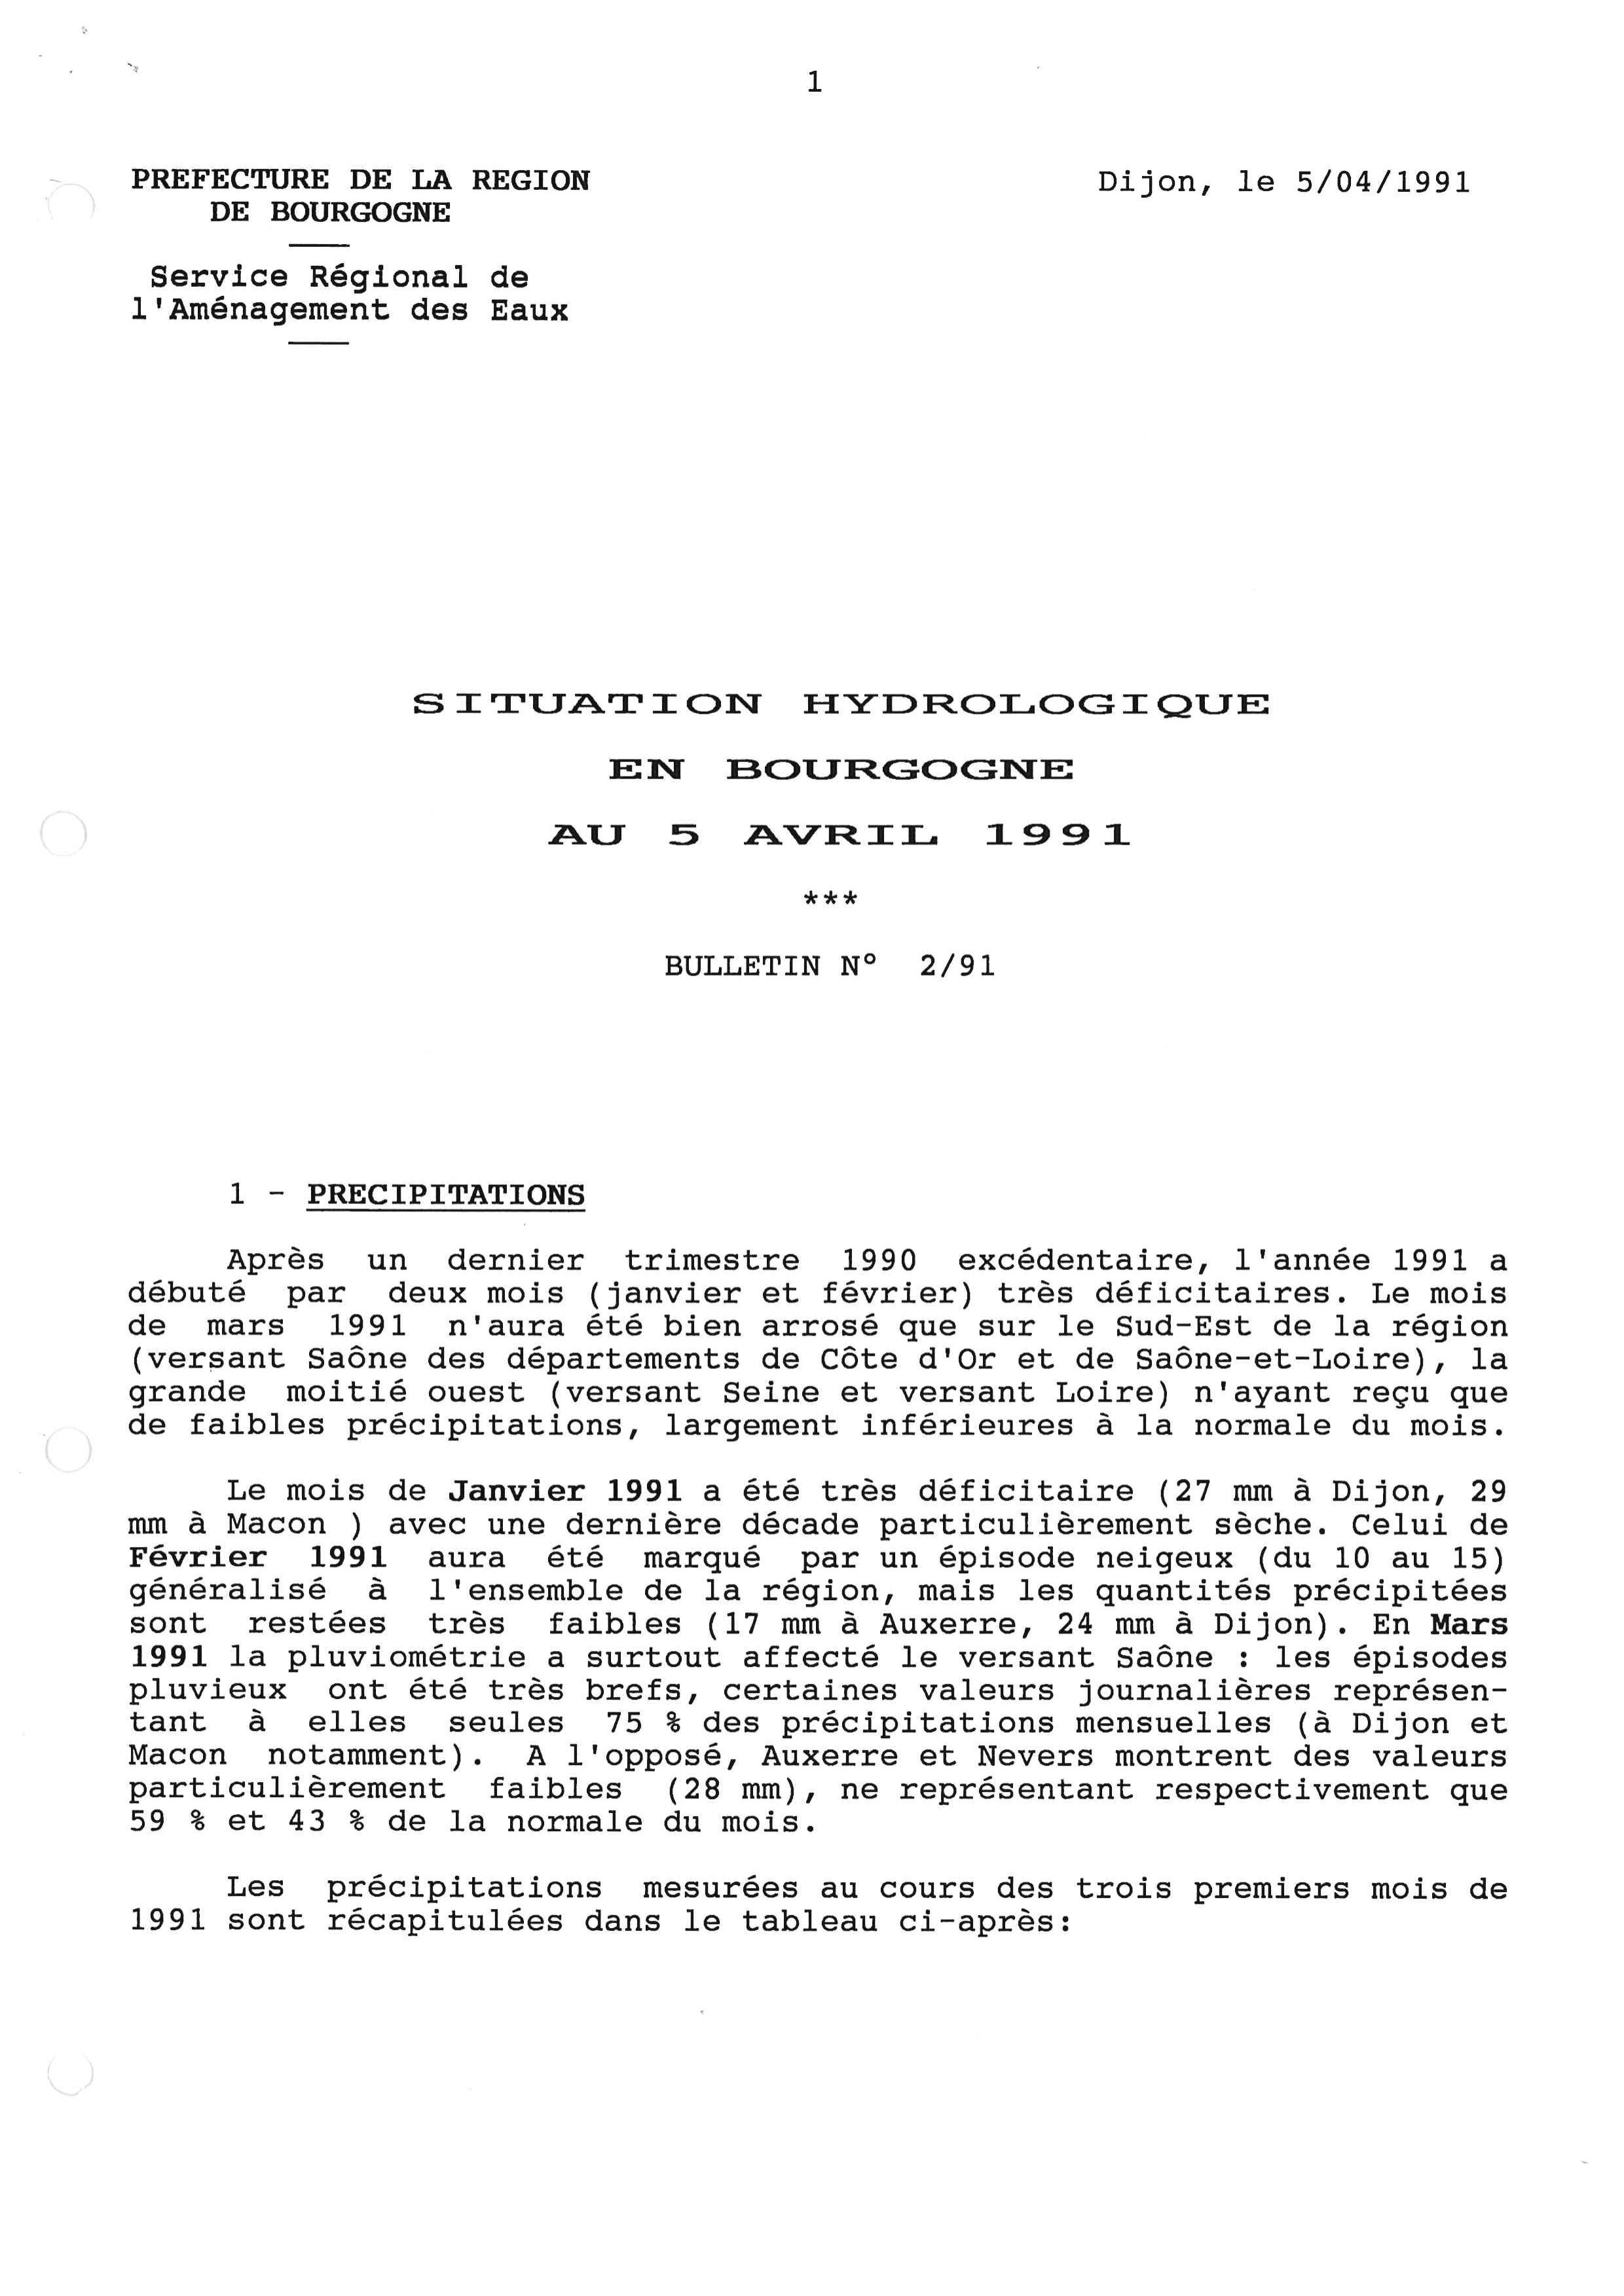 Bulletin hydrologique des mois de janvier, février et mars 1991